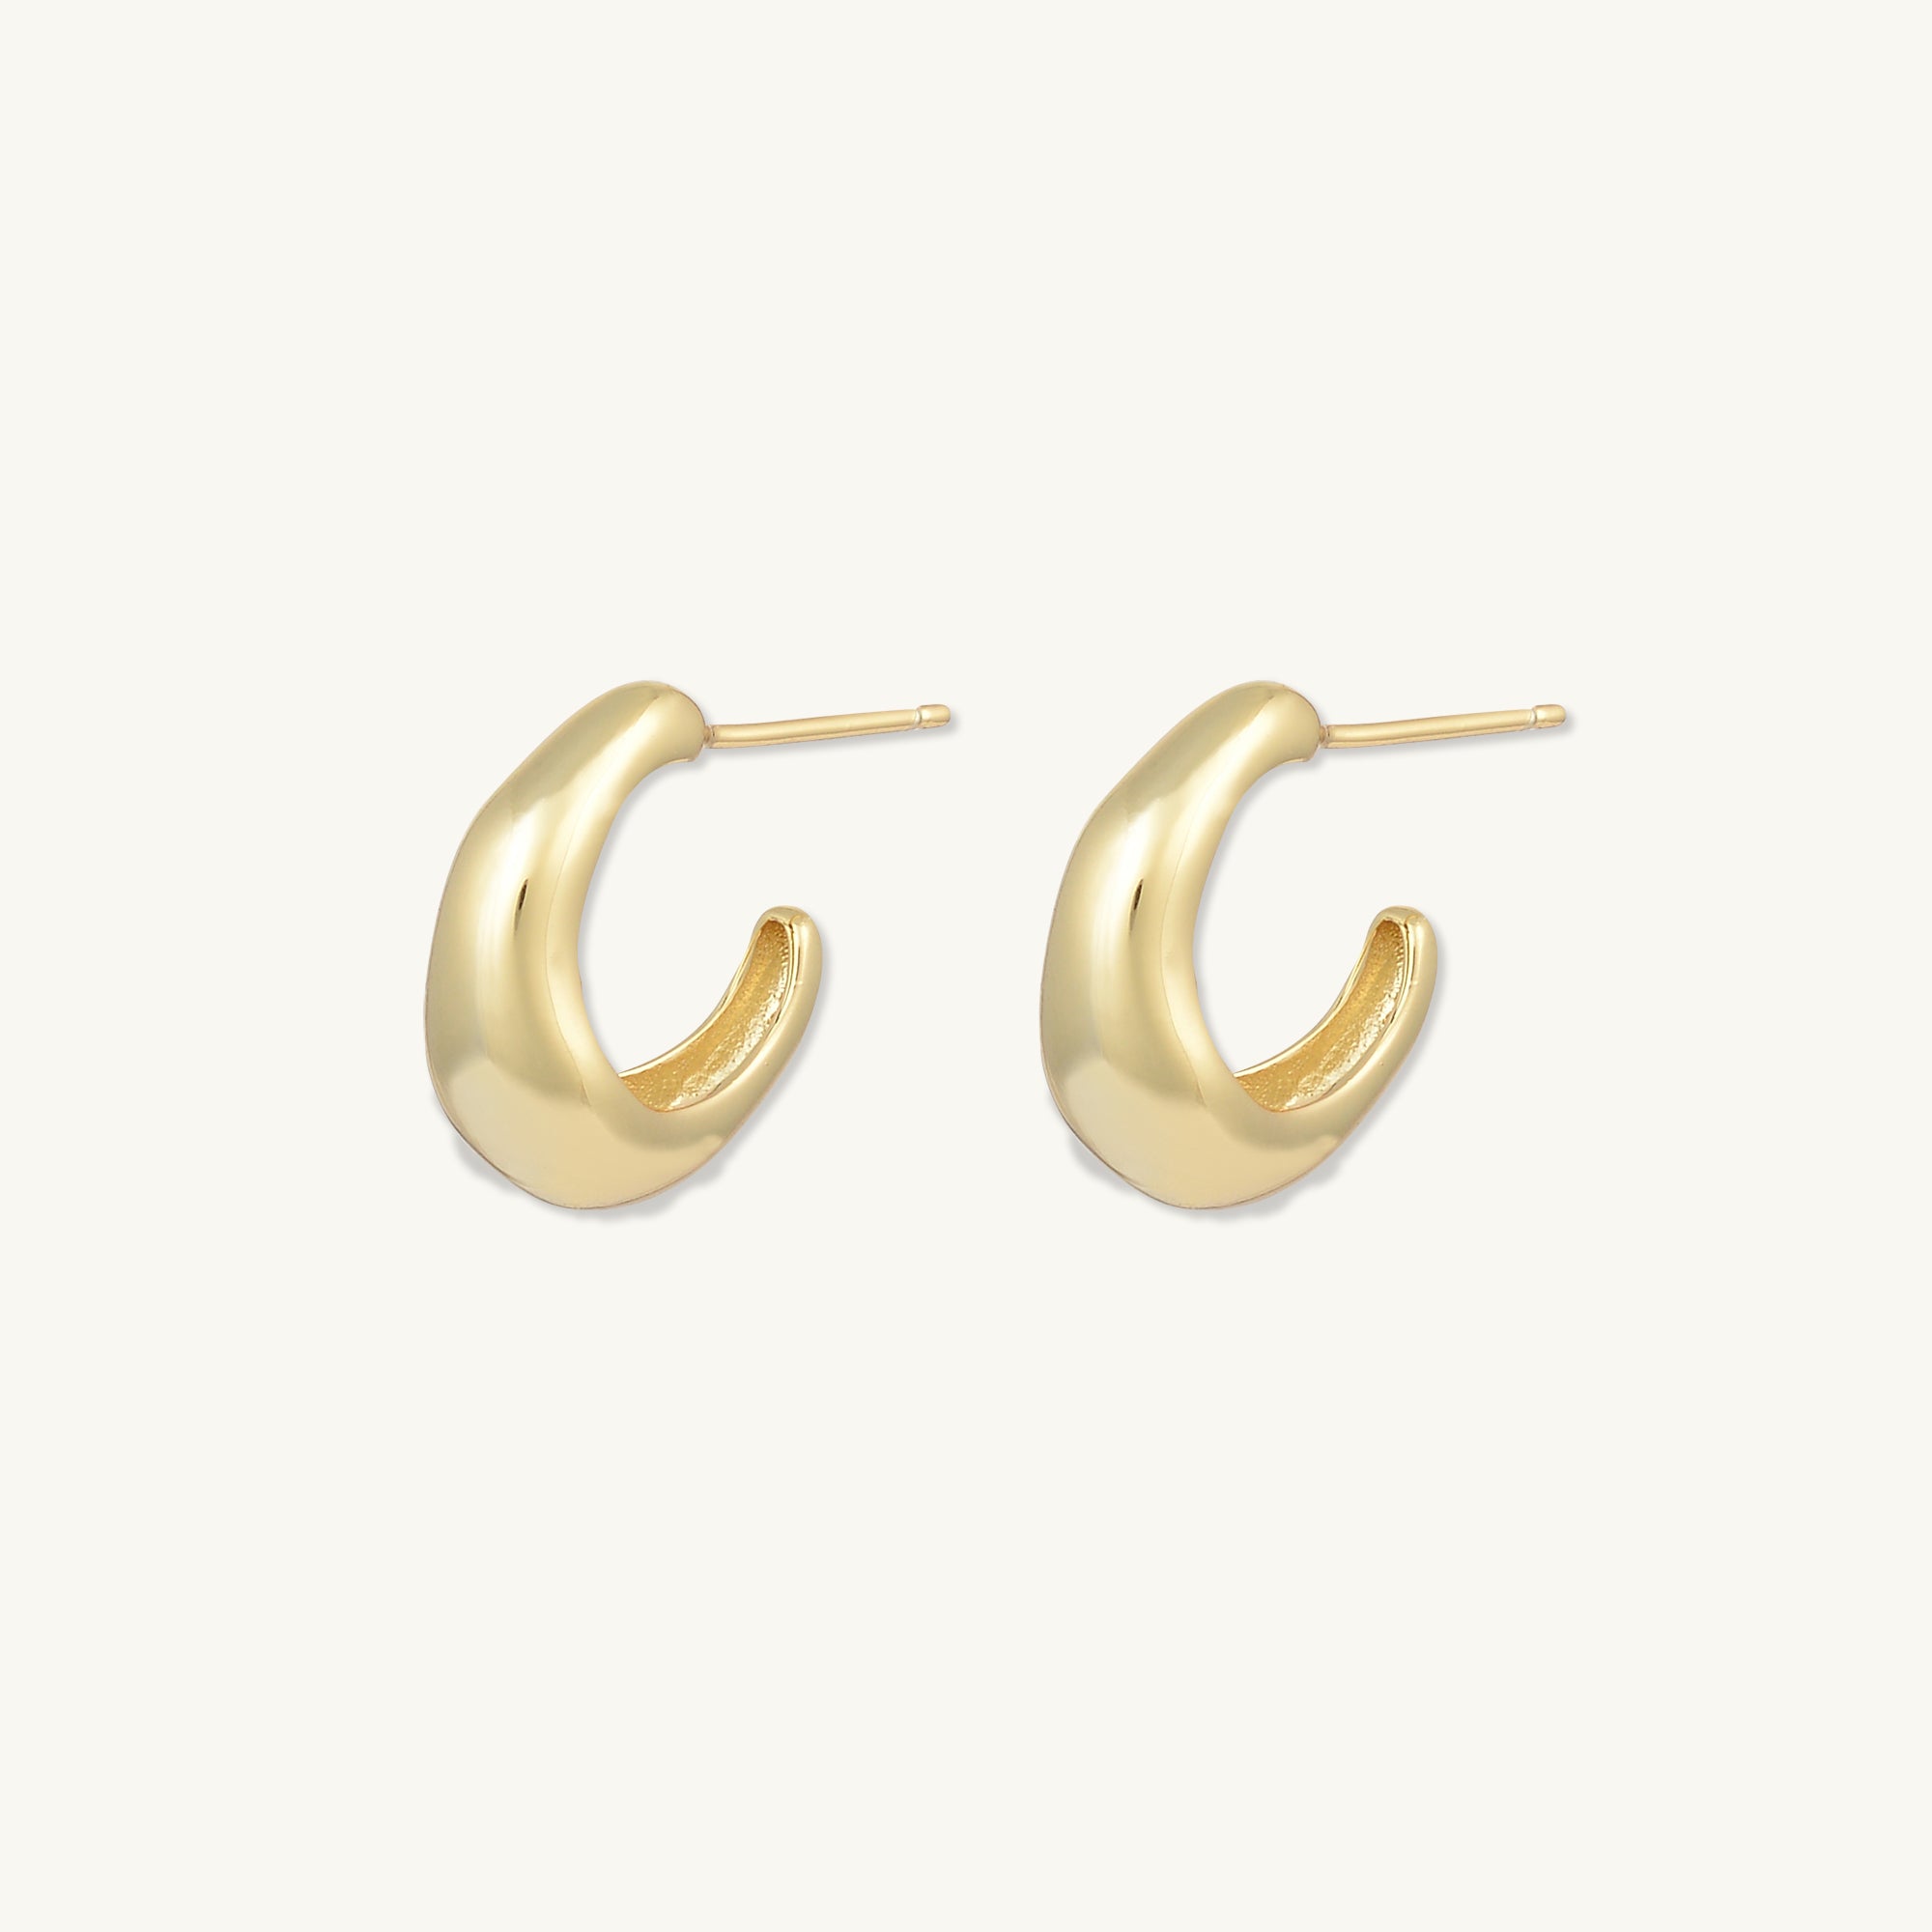 C Shape Huggie Earrings